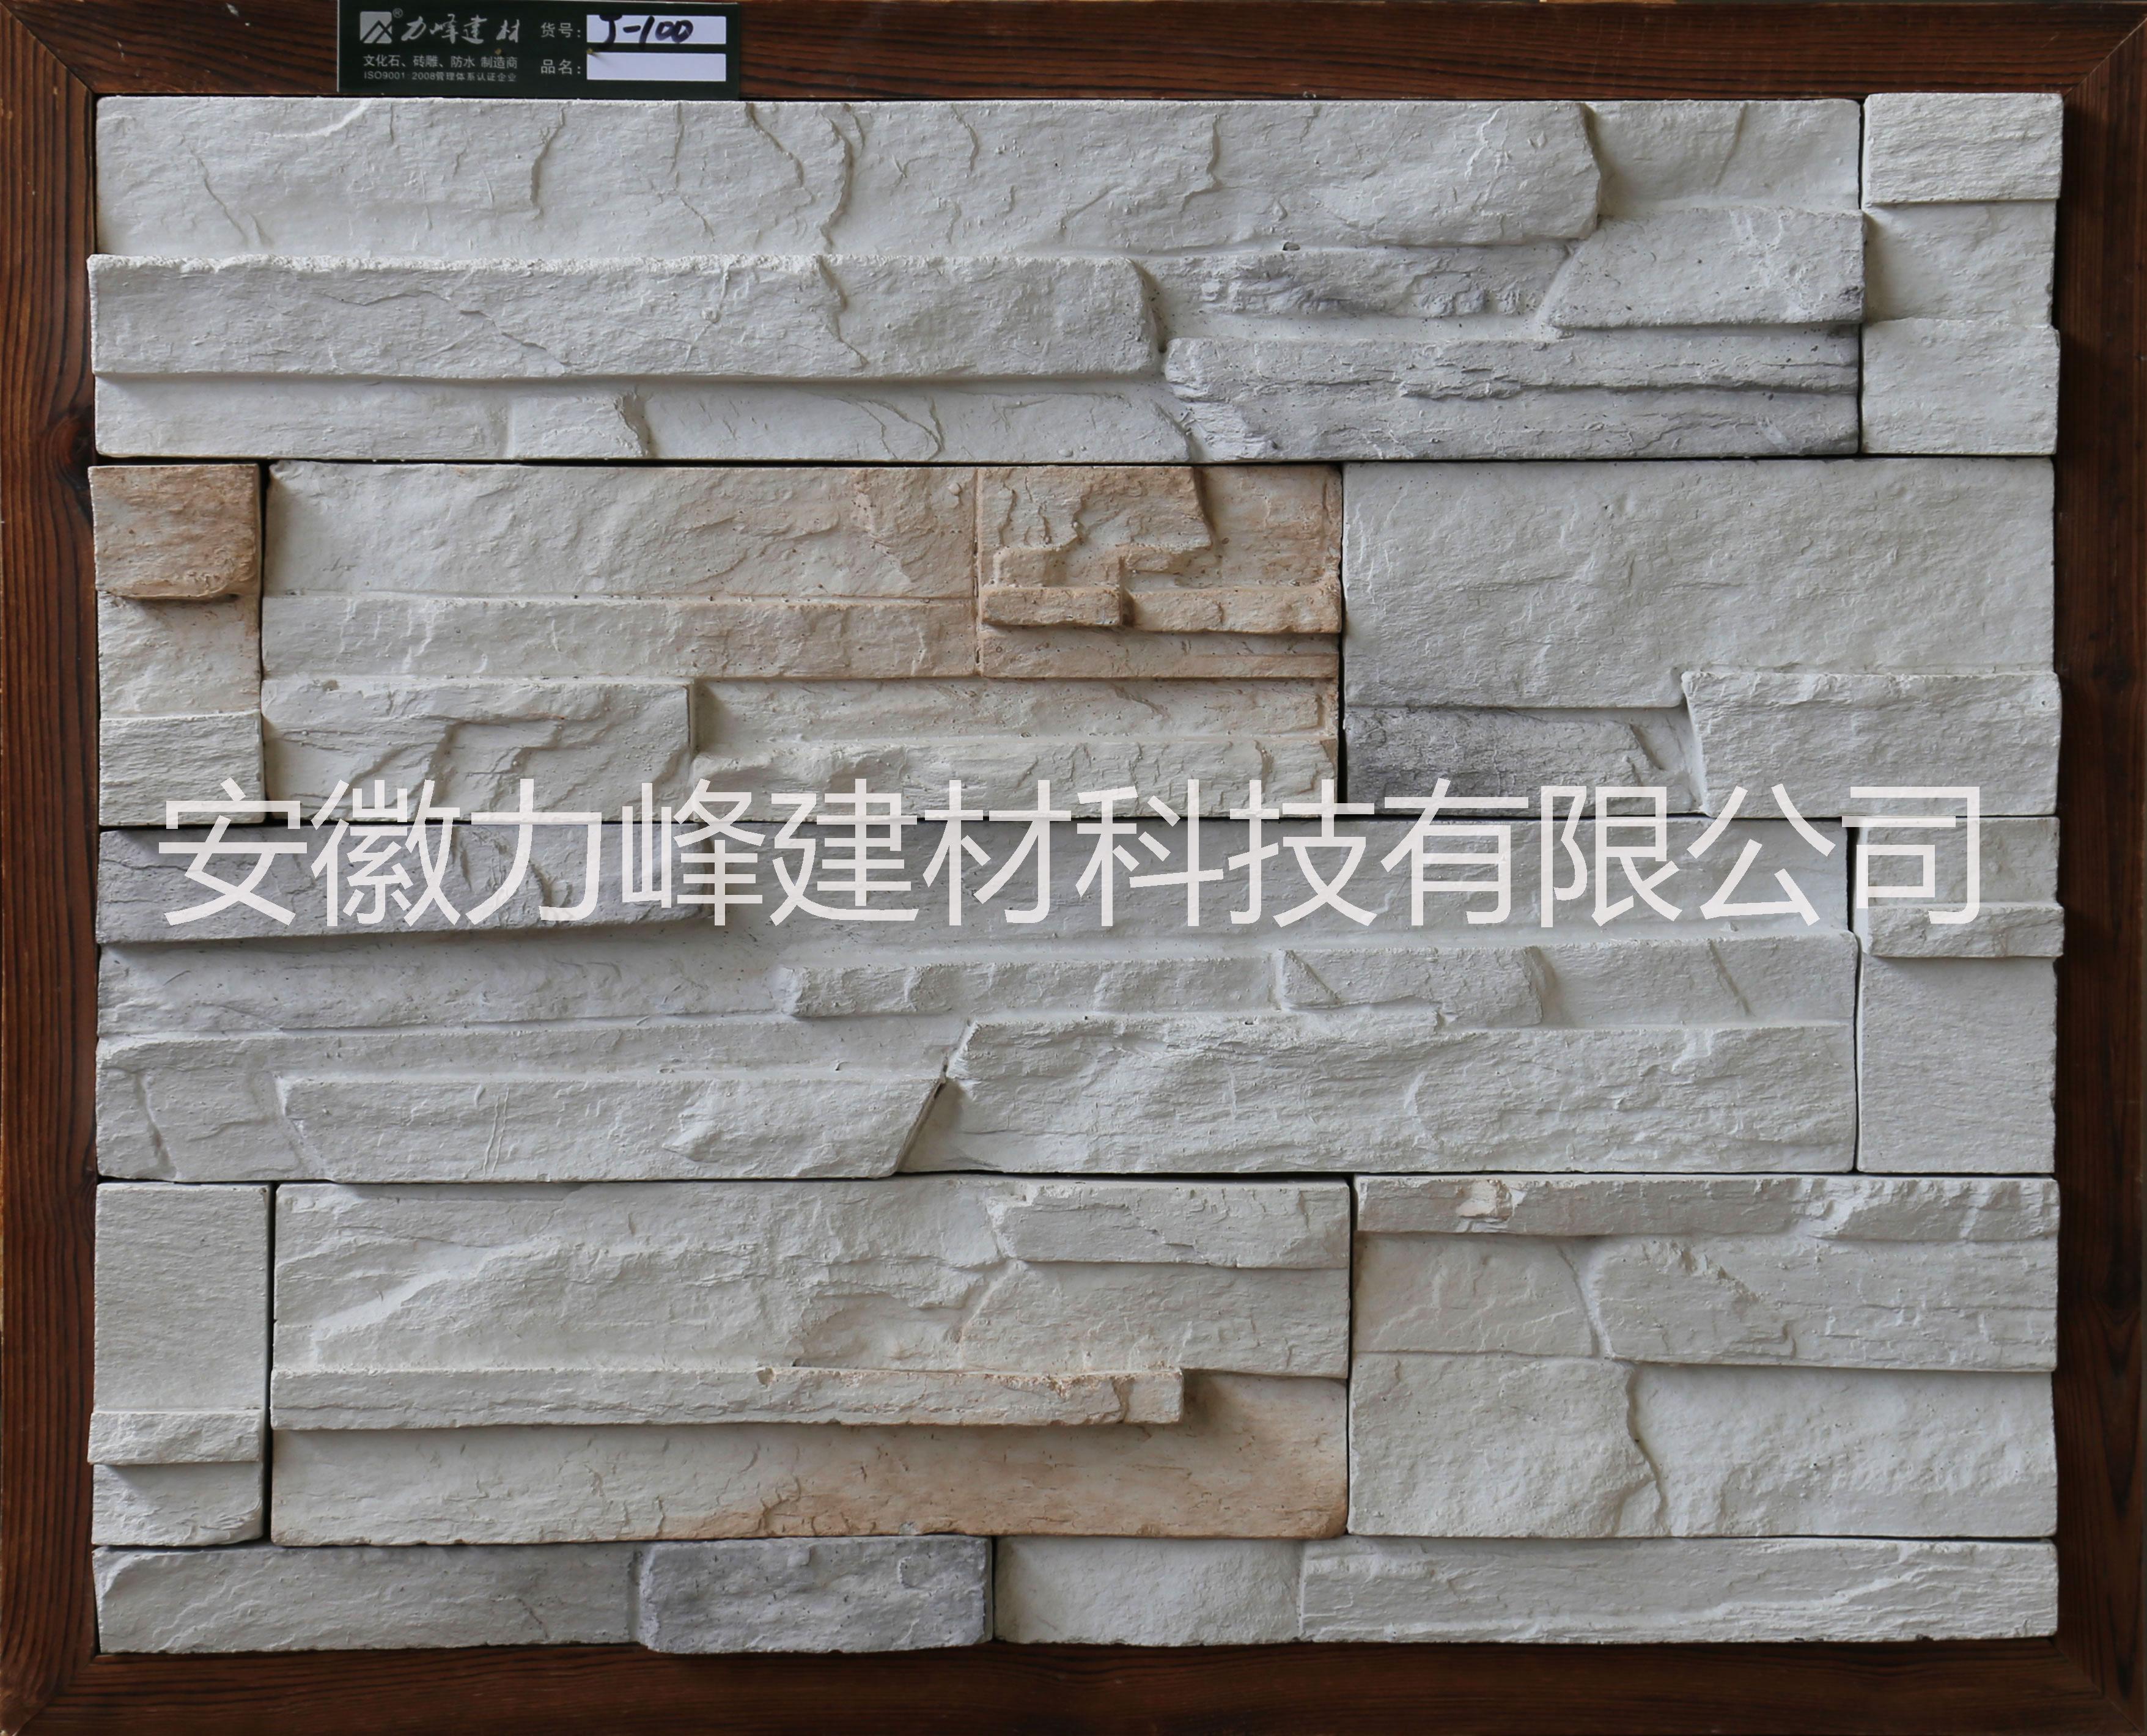 人造文化石别墅外墙砖仿天然礁石文化石室内背景墙文化砖厂家定制